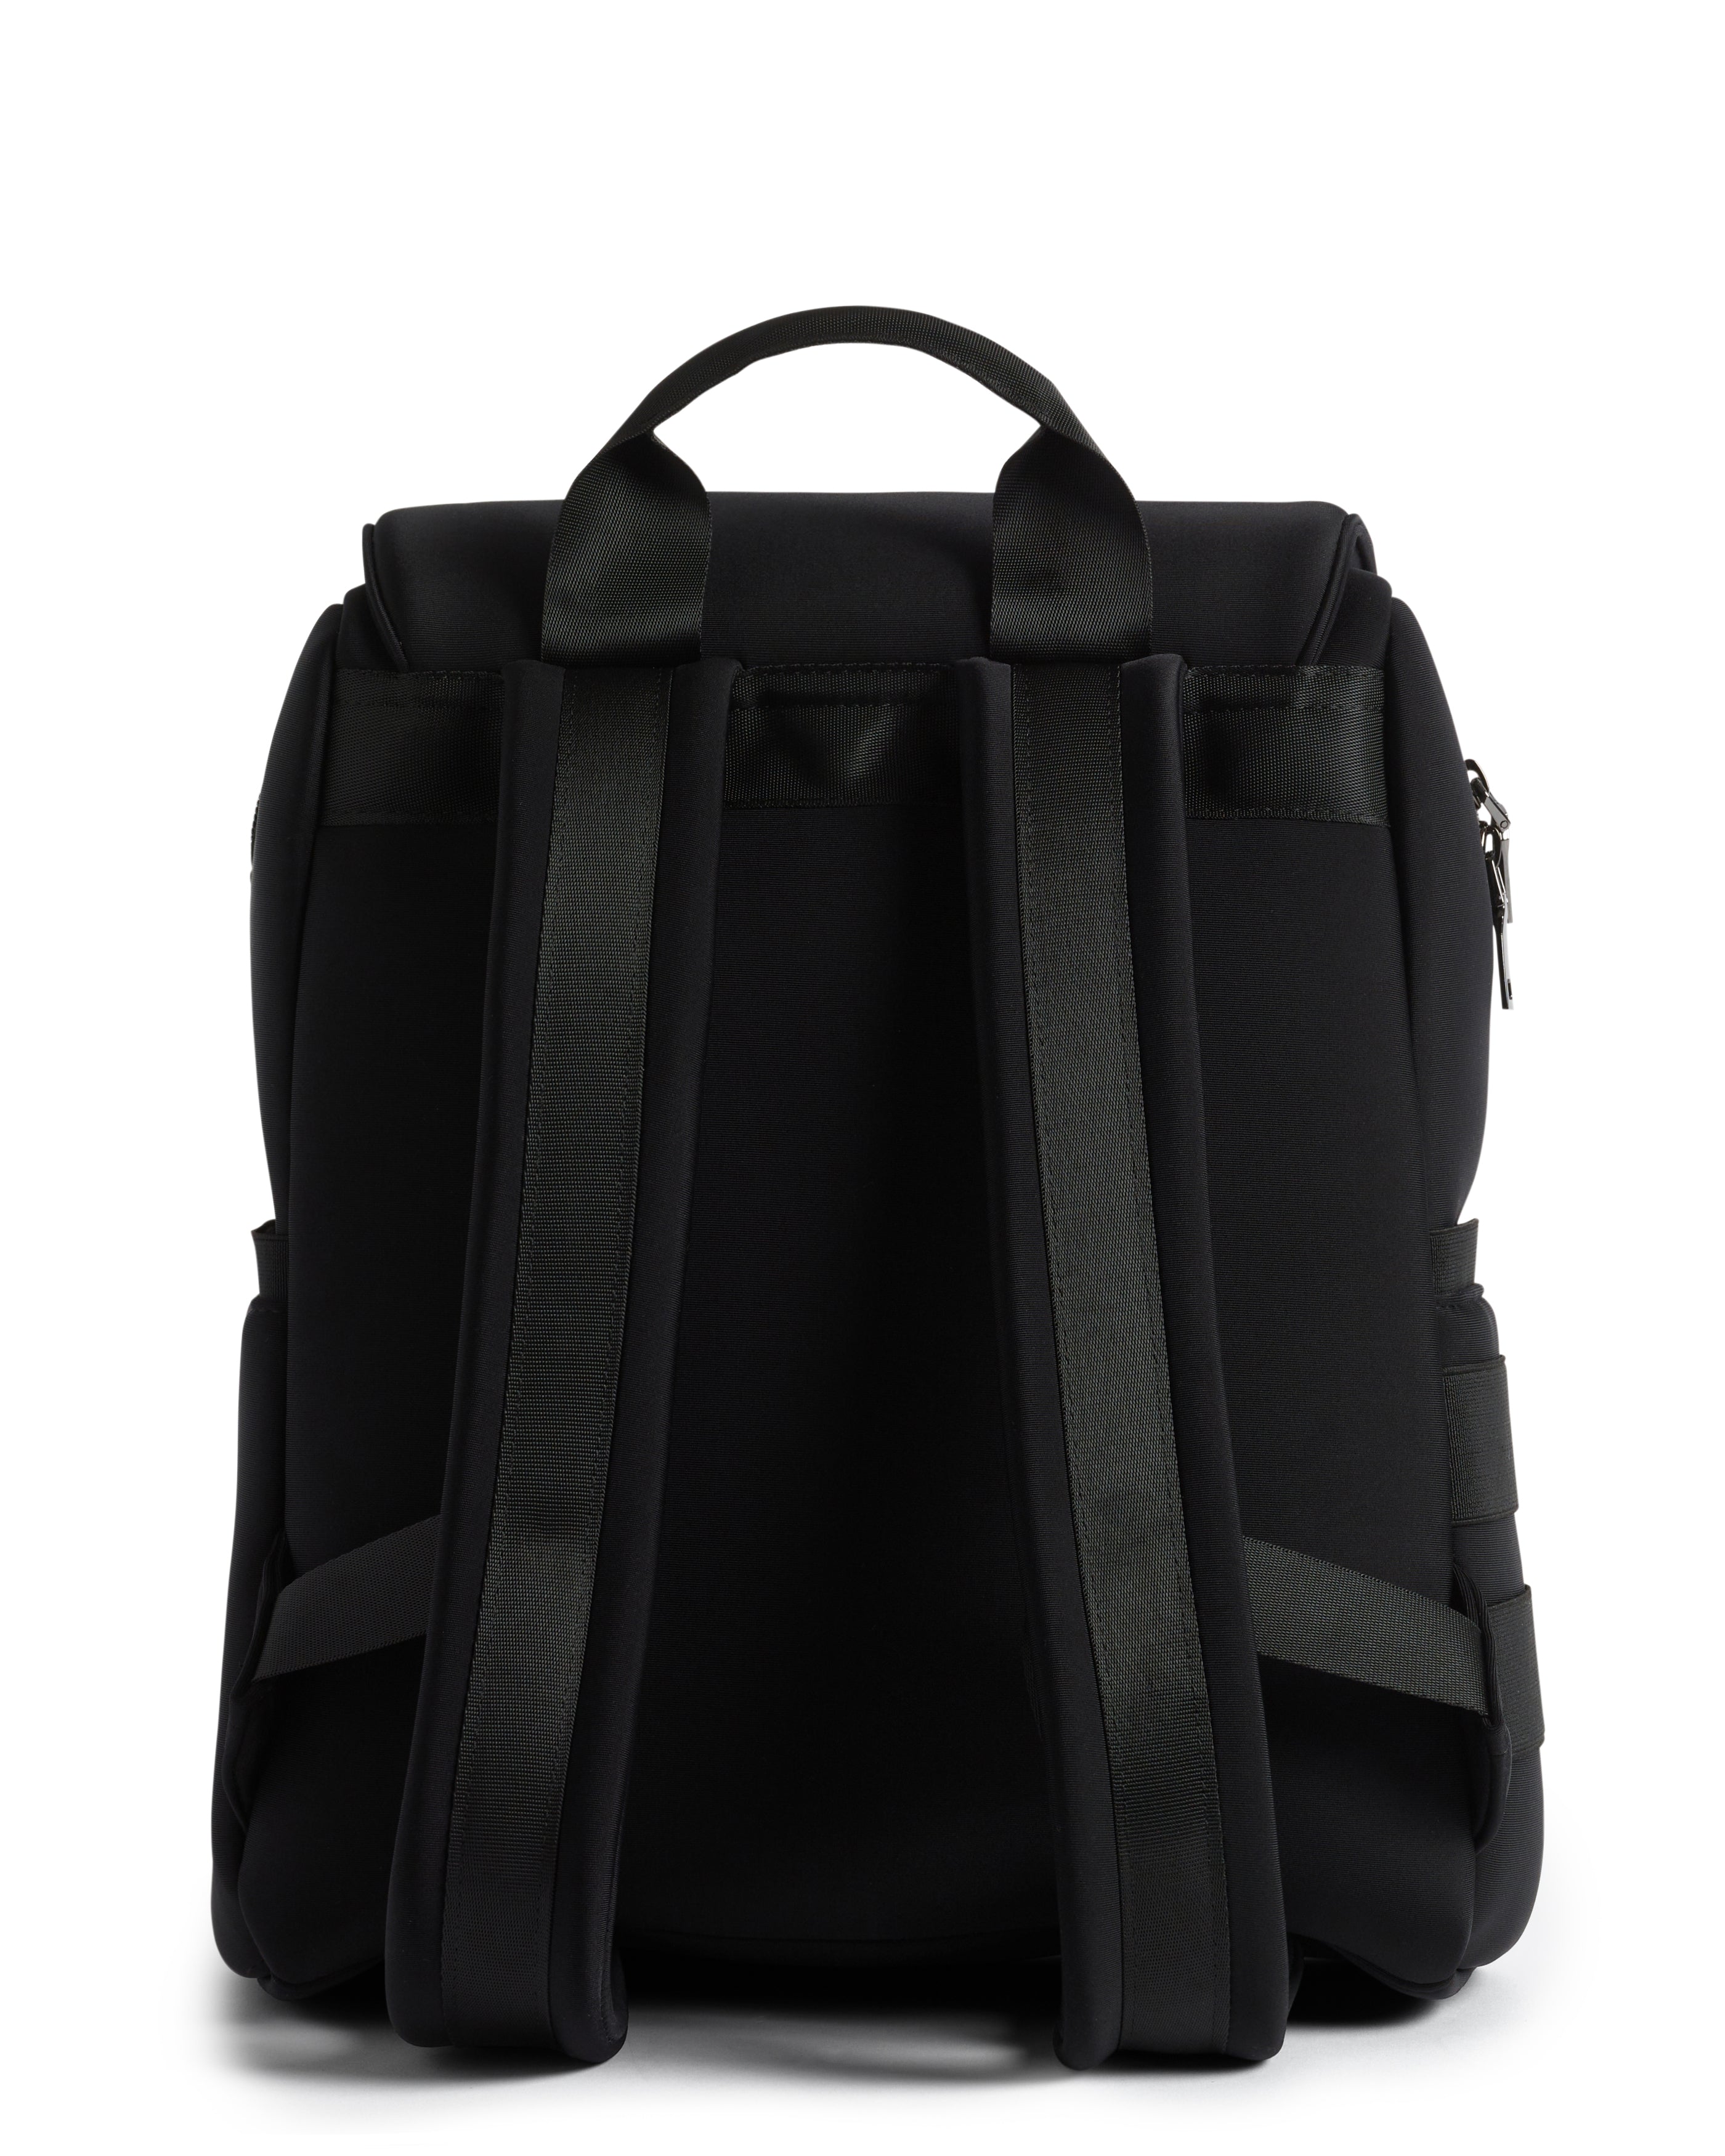 Prene The Flynn Nappy Backpack Neoprene Bag - Black | Nappy Bags | Baby ...